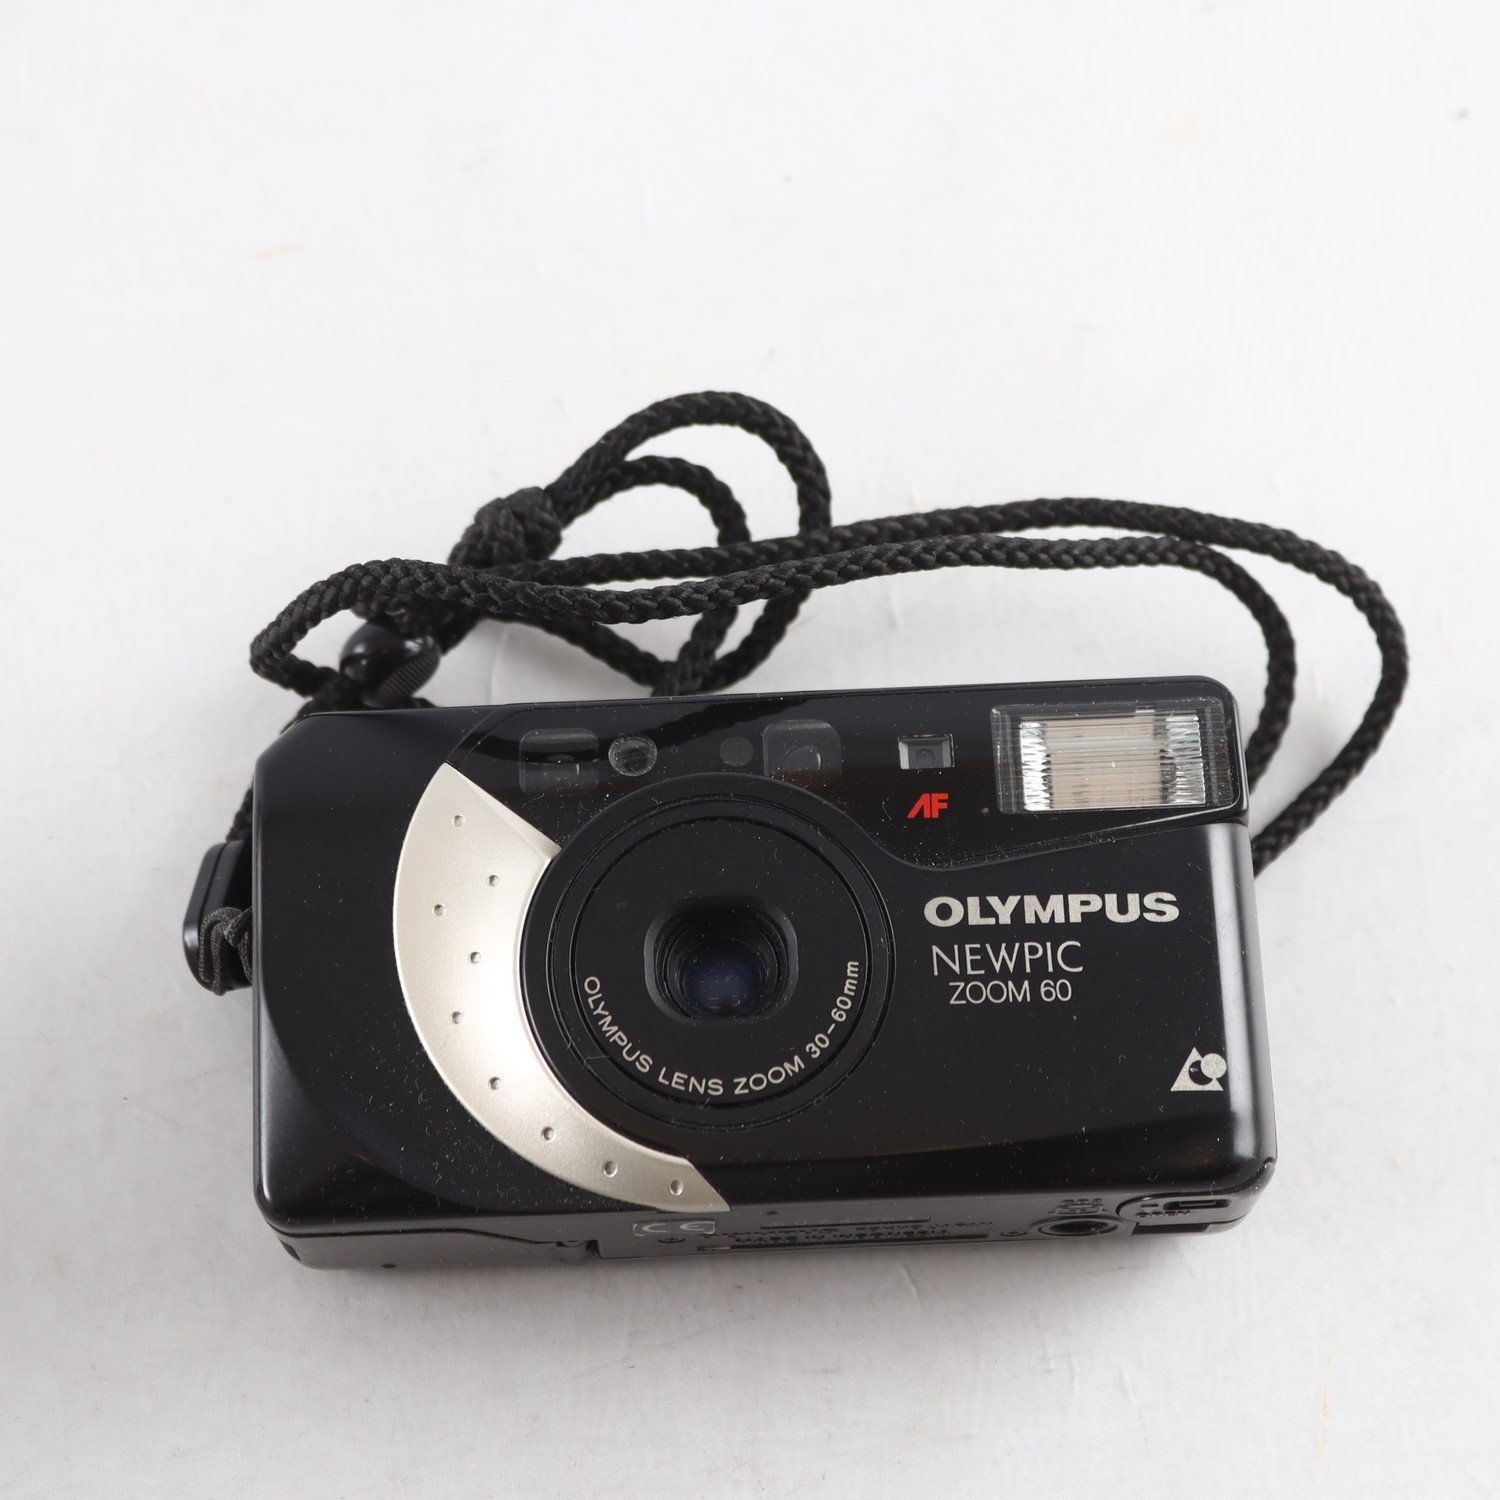 Kamera, Olympus newpic, 60 zoom.